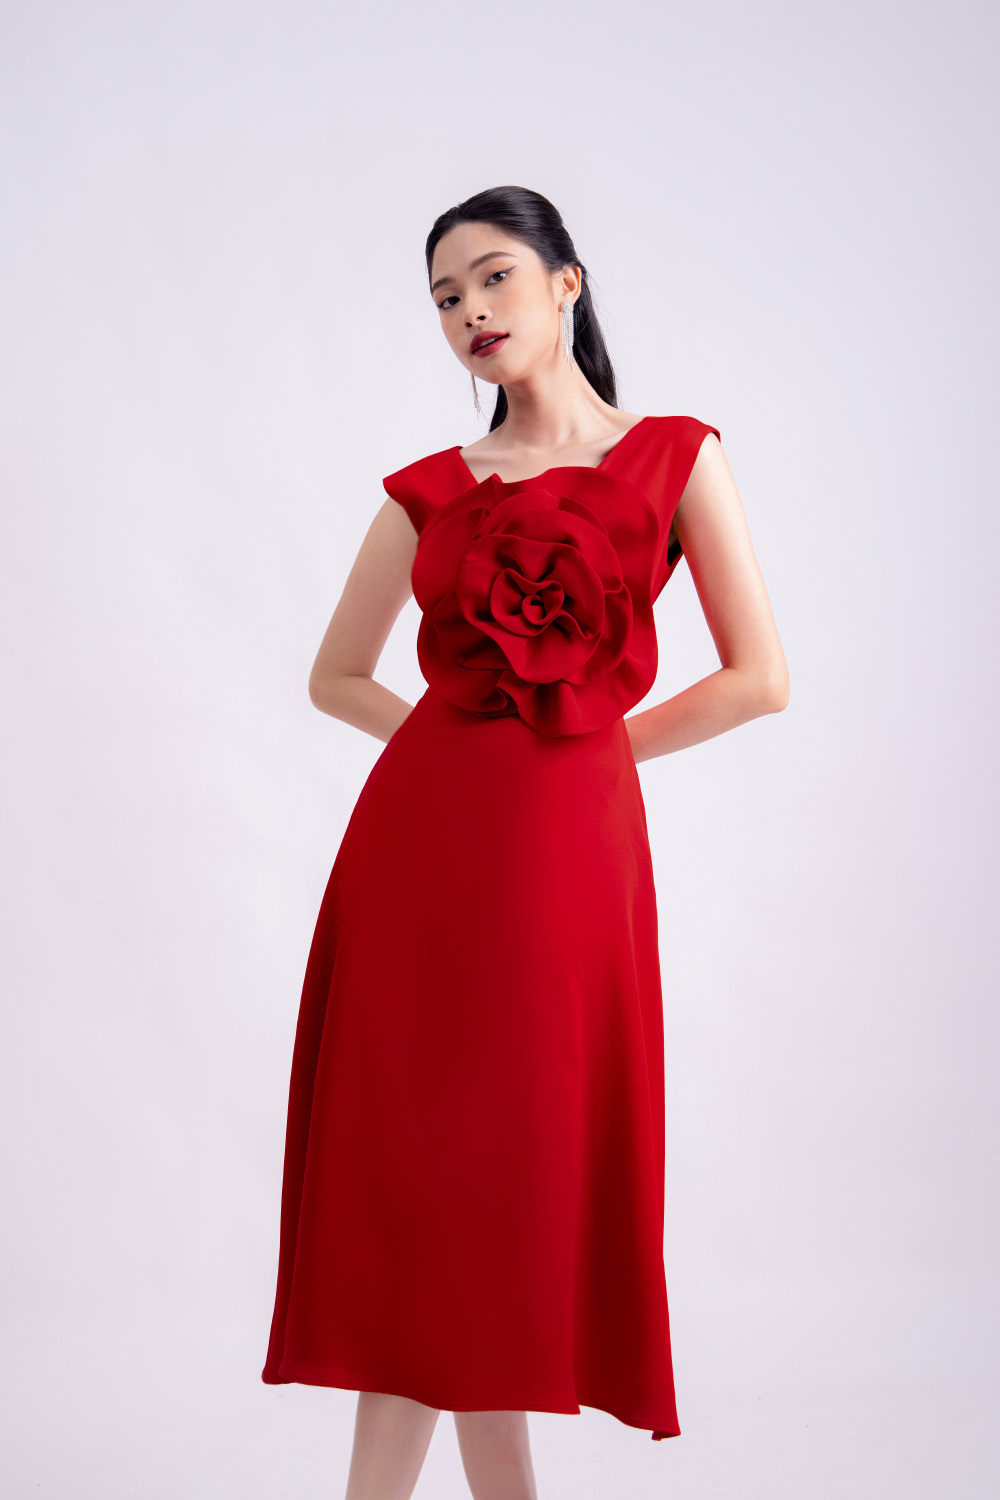 Đầm đỏ dự tiệc đính hoa to sang trọng HL23-17 | Thời trang công sở ...